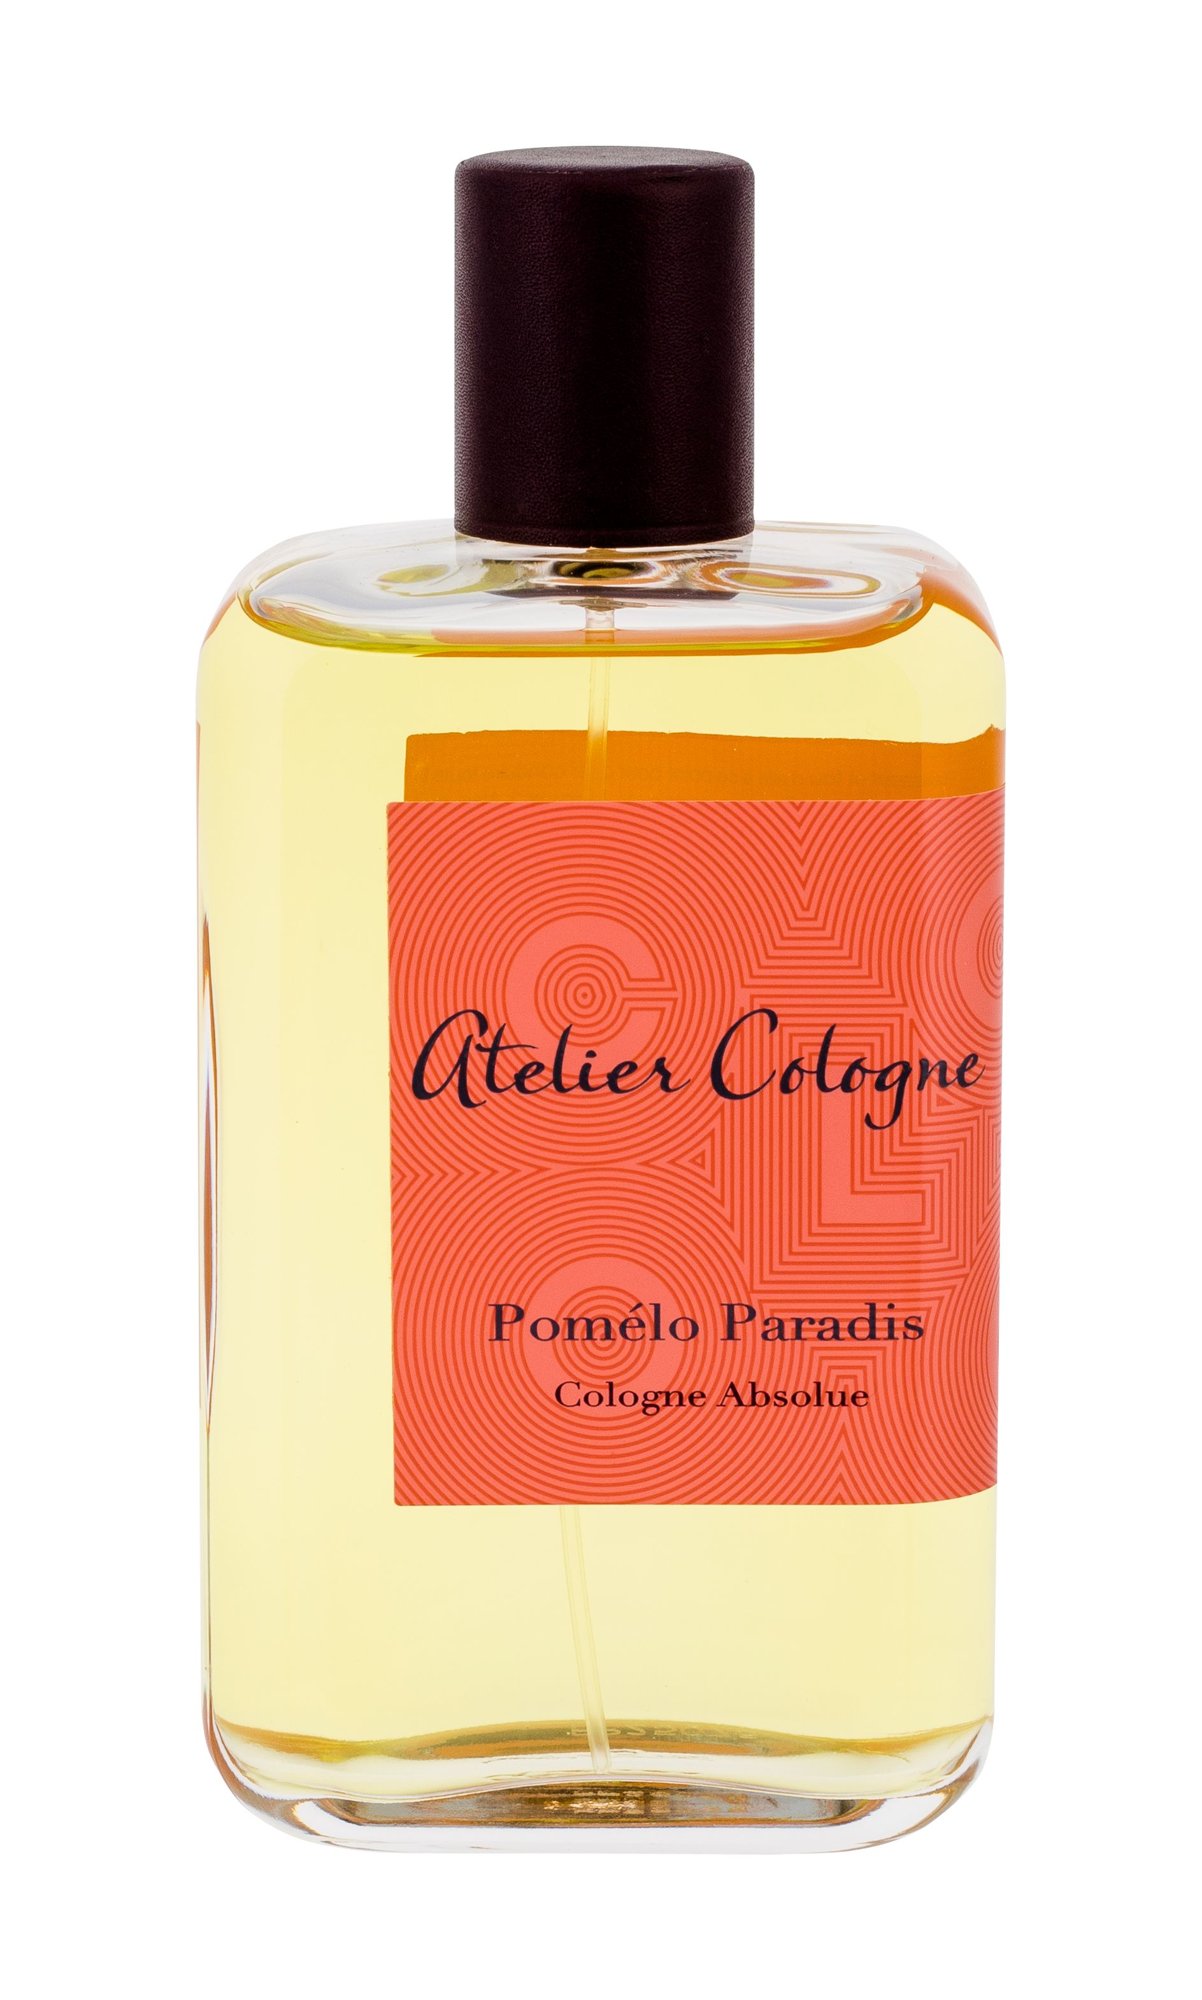 Atelier Cologne Pomélo Paradis 200ml NIŠINIAI Kvepalai Unisex Parfum (Pažeista pakuotė)